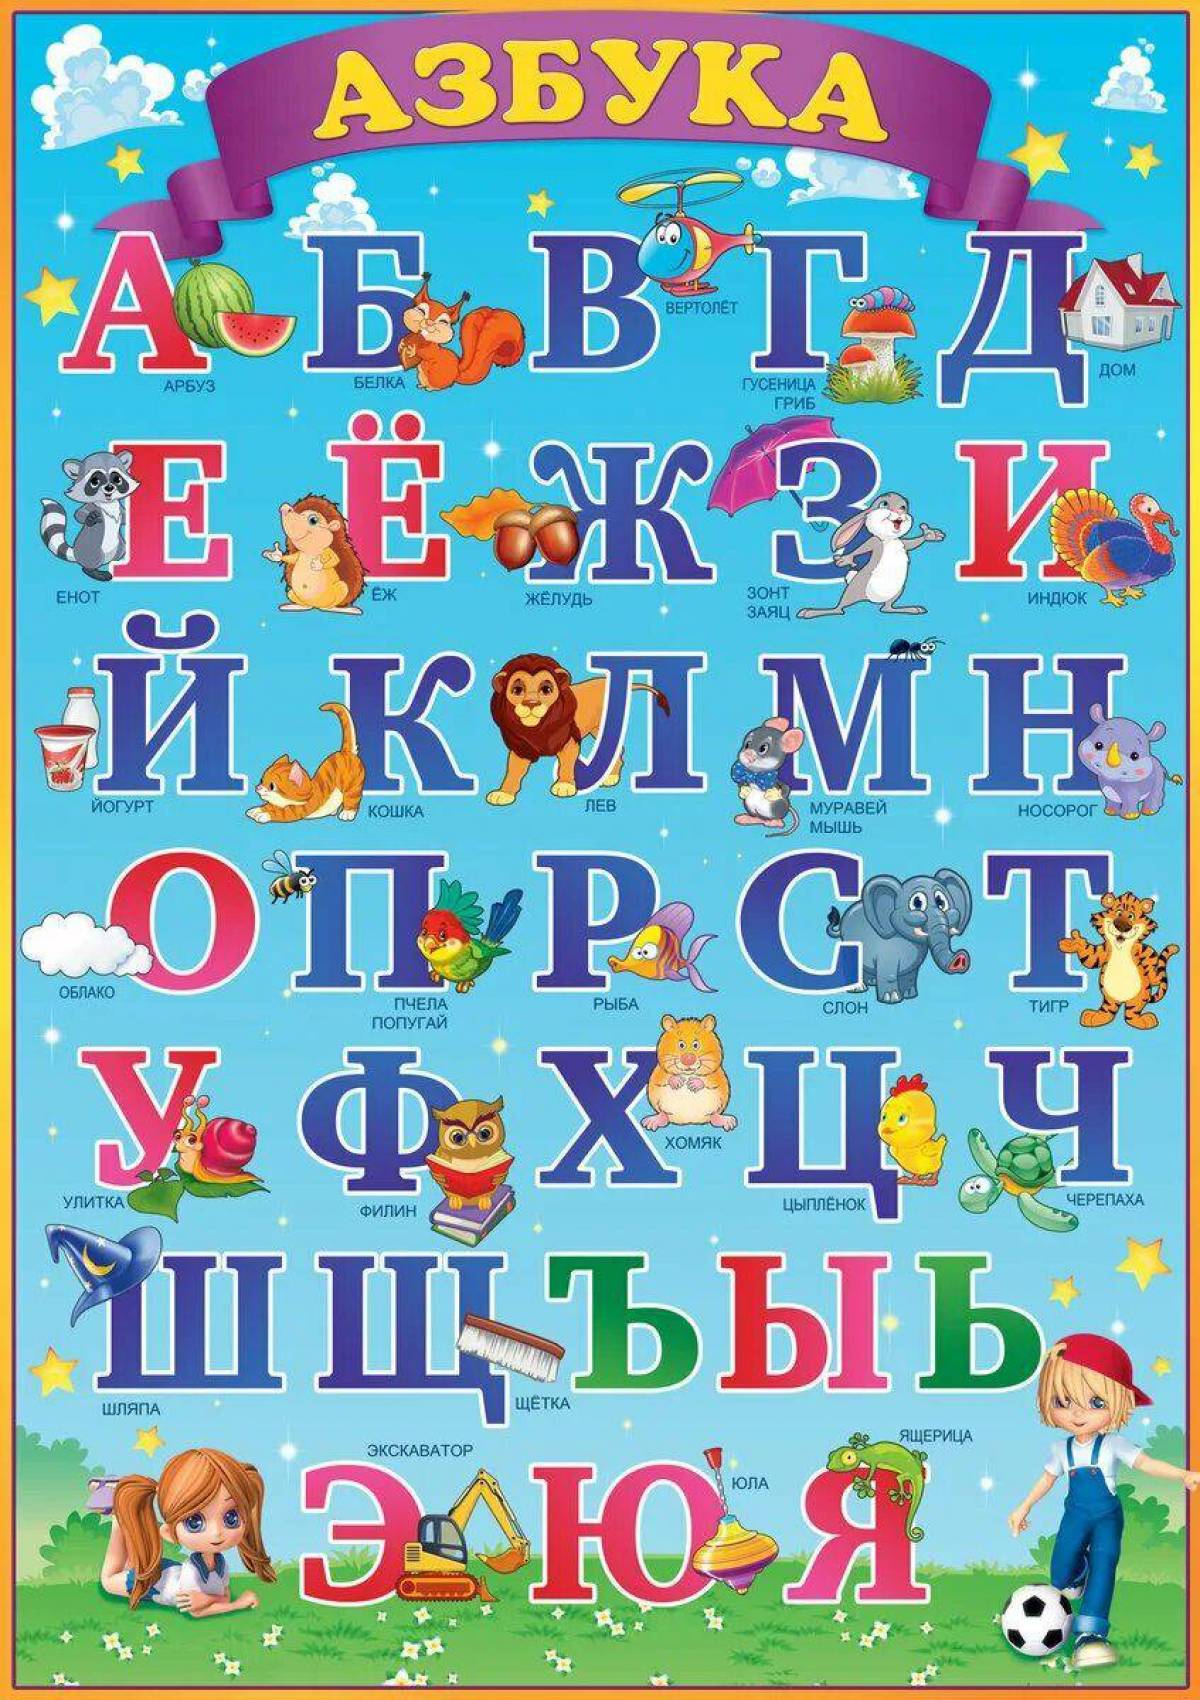 Показать буквы русского алфавита. Азбука для детей. Алфавит русский для детей. Азбука детская в картинках. Плакат алфавит для детей.